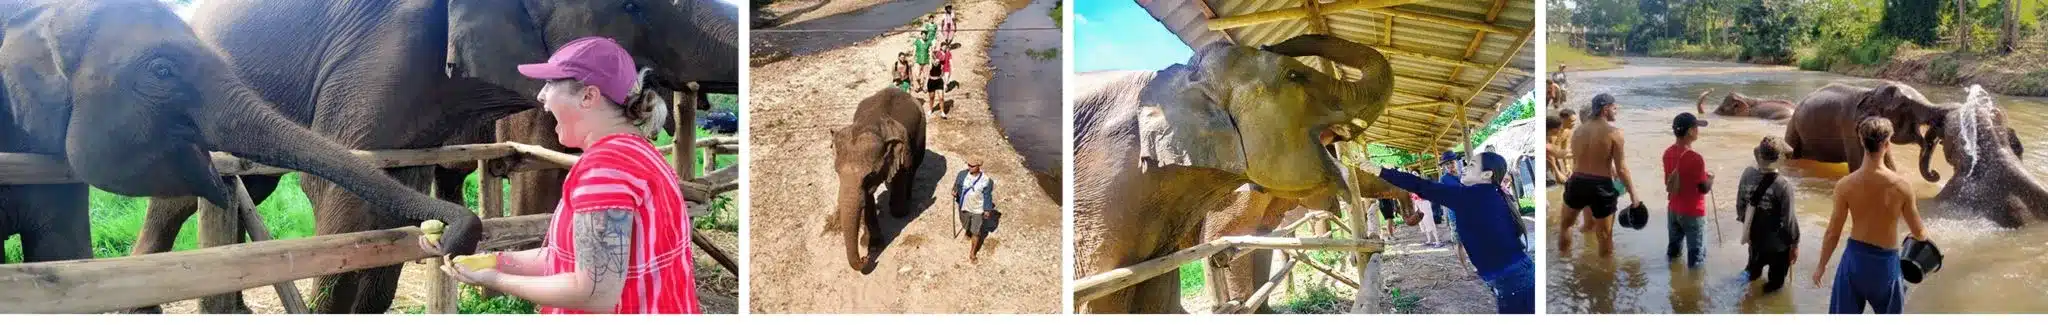 Elephant Tour Chiang Mai Thailand